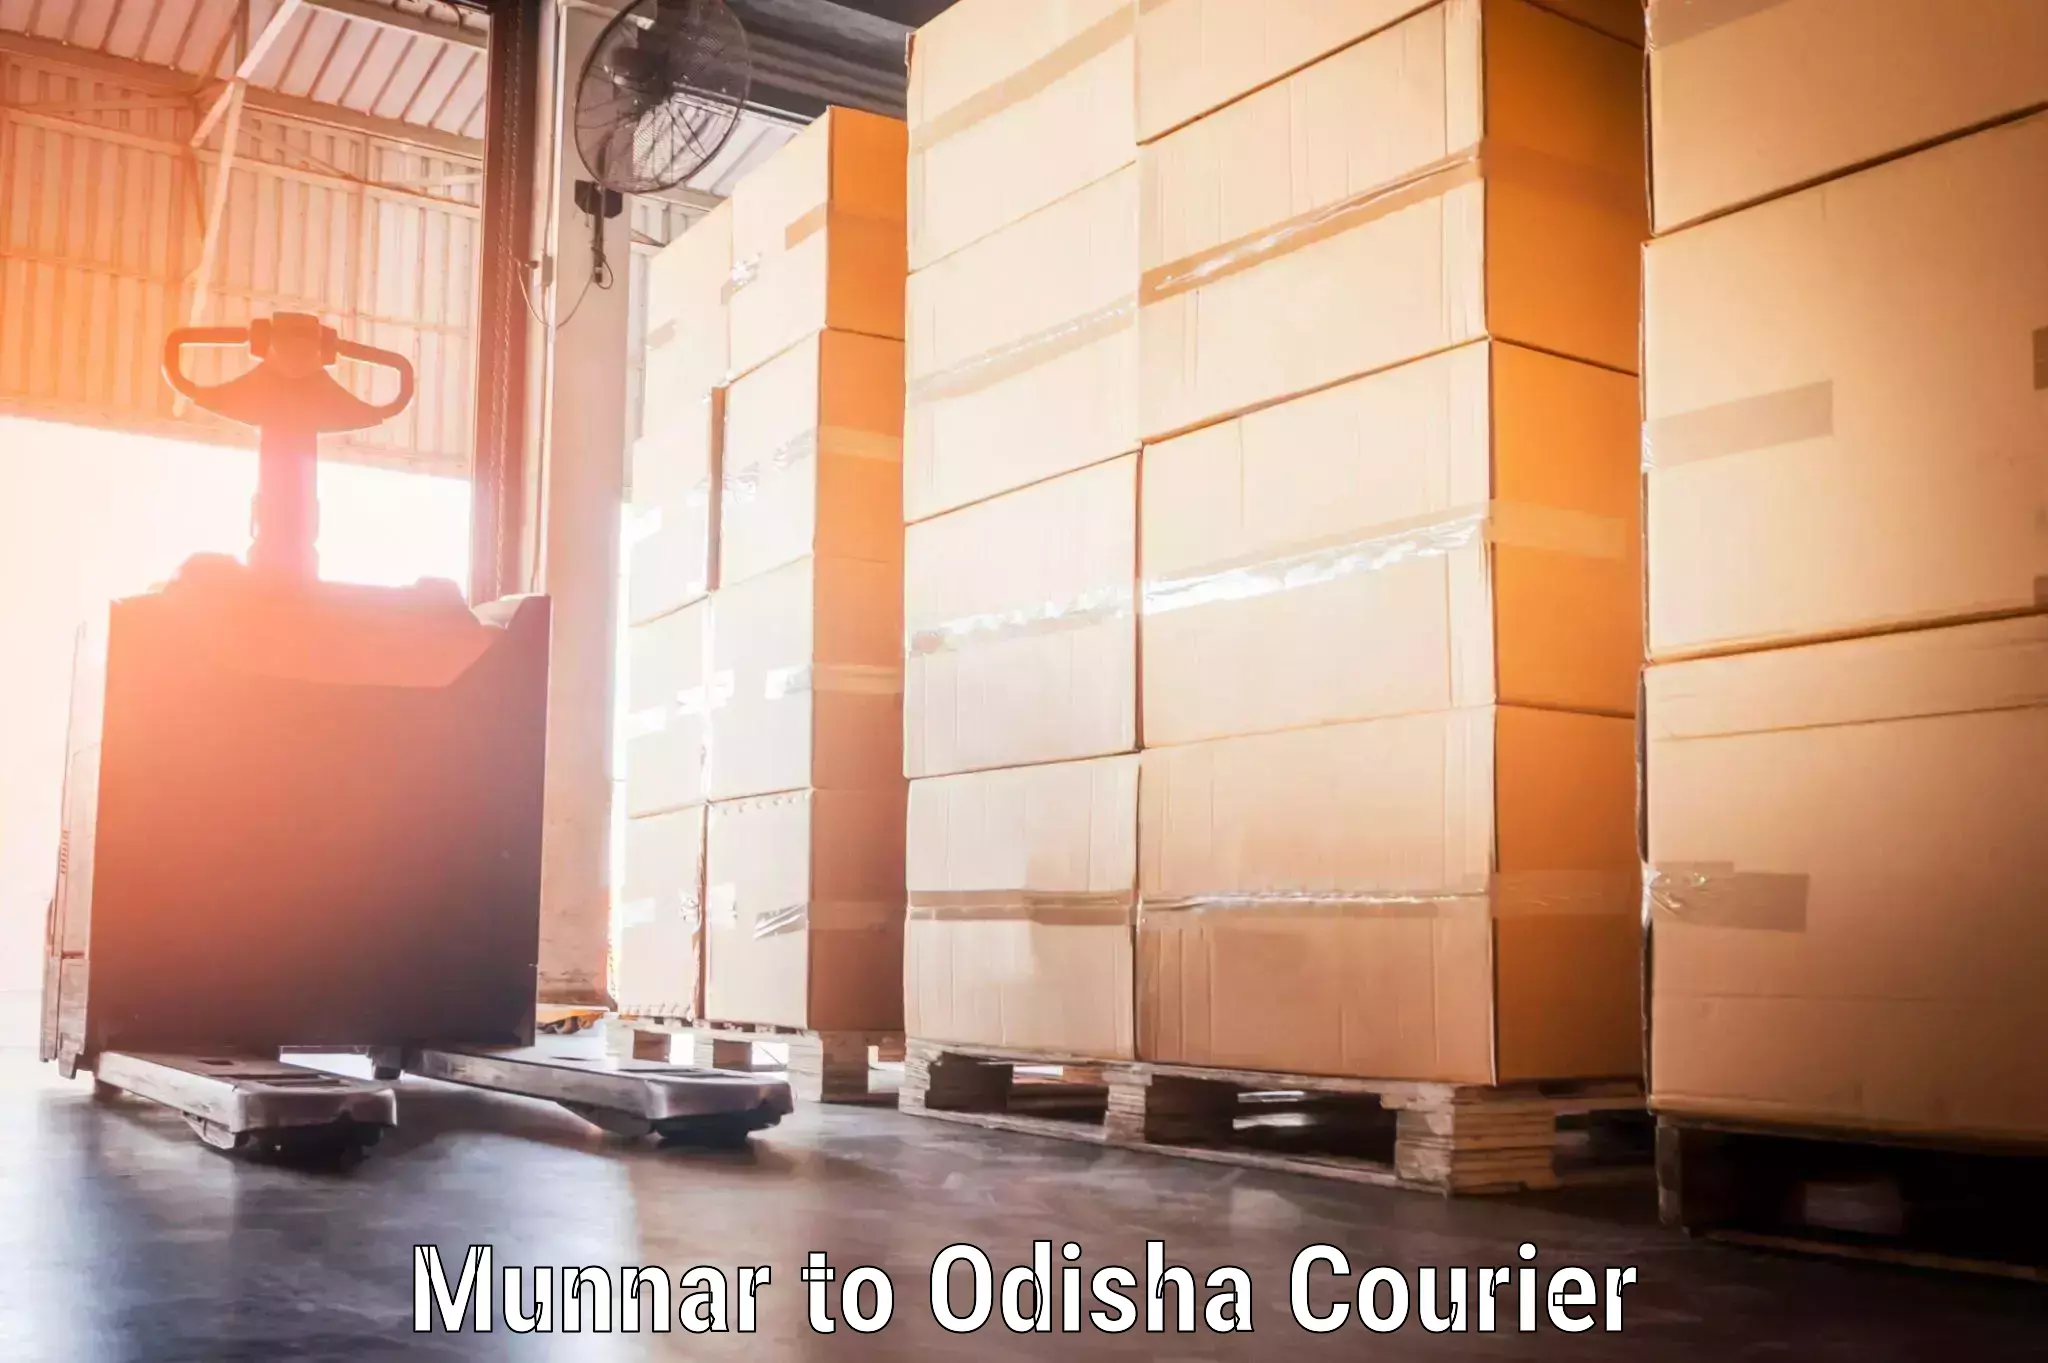 Baggage shipping experience Munnar to Odisha